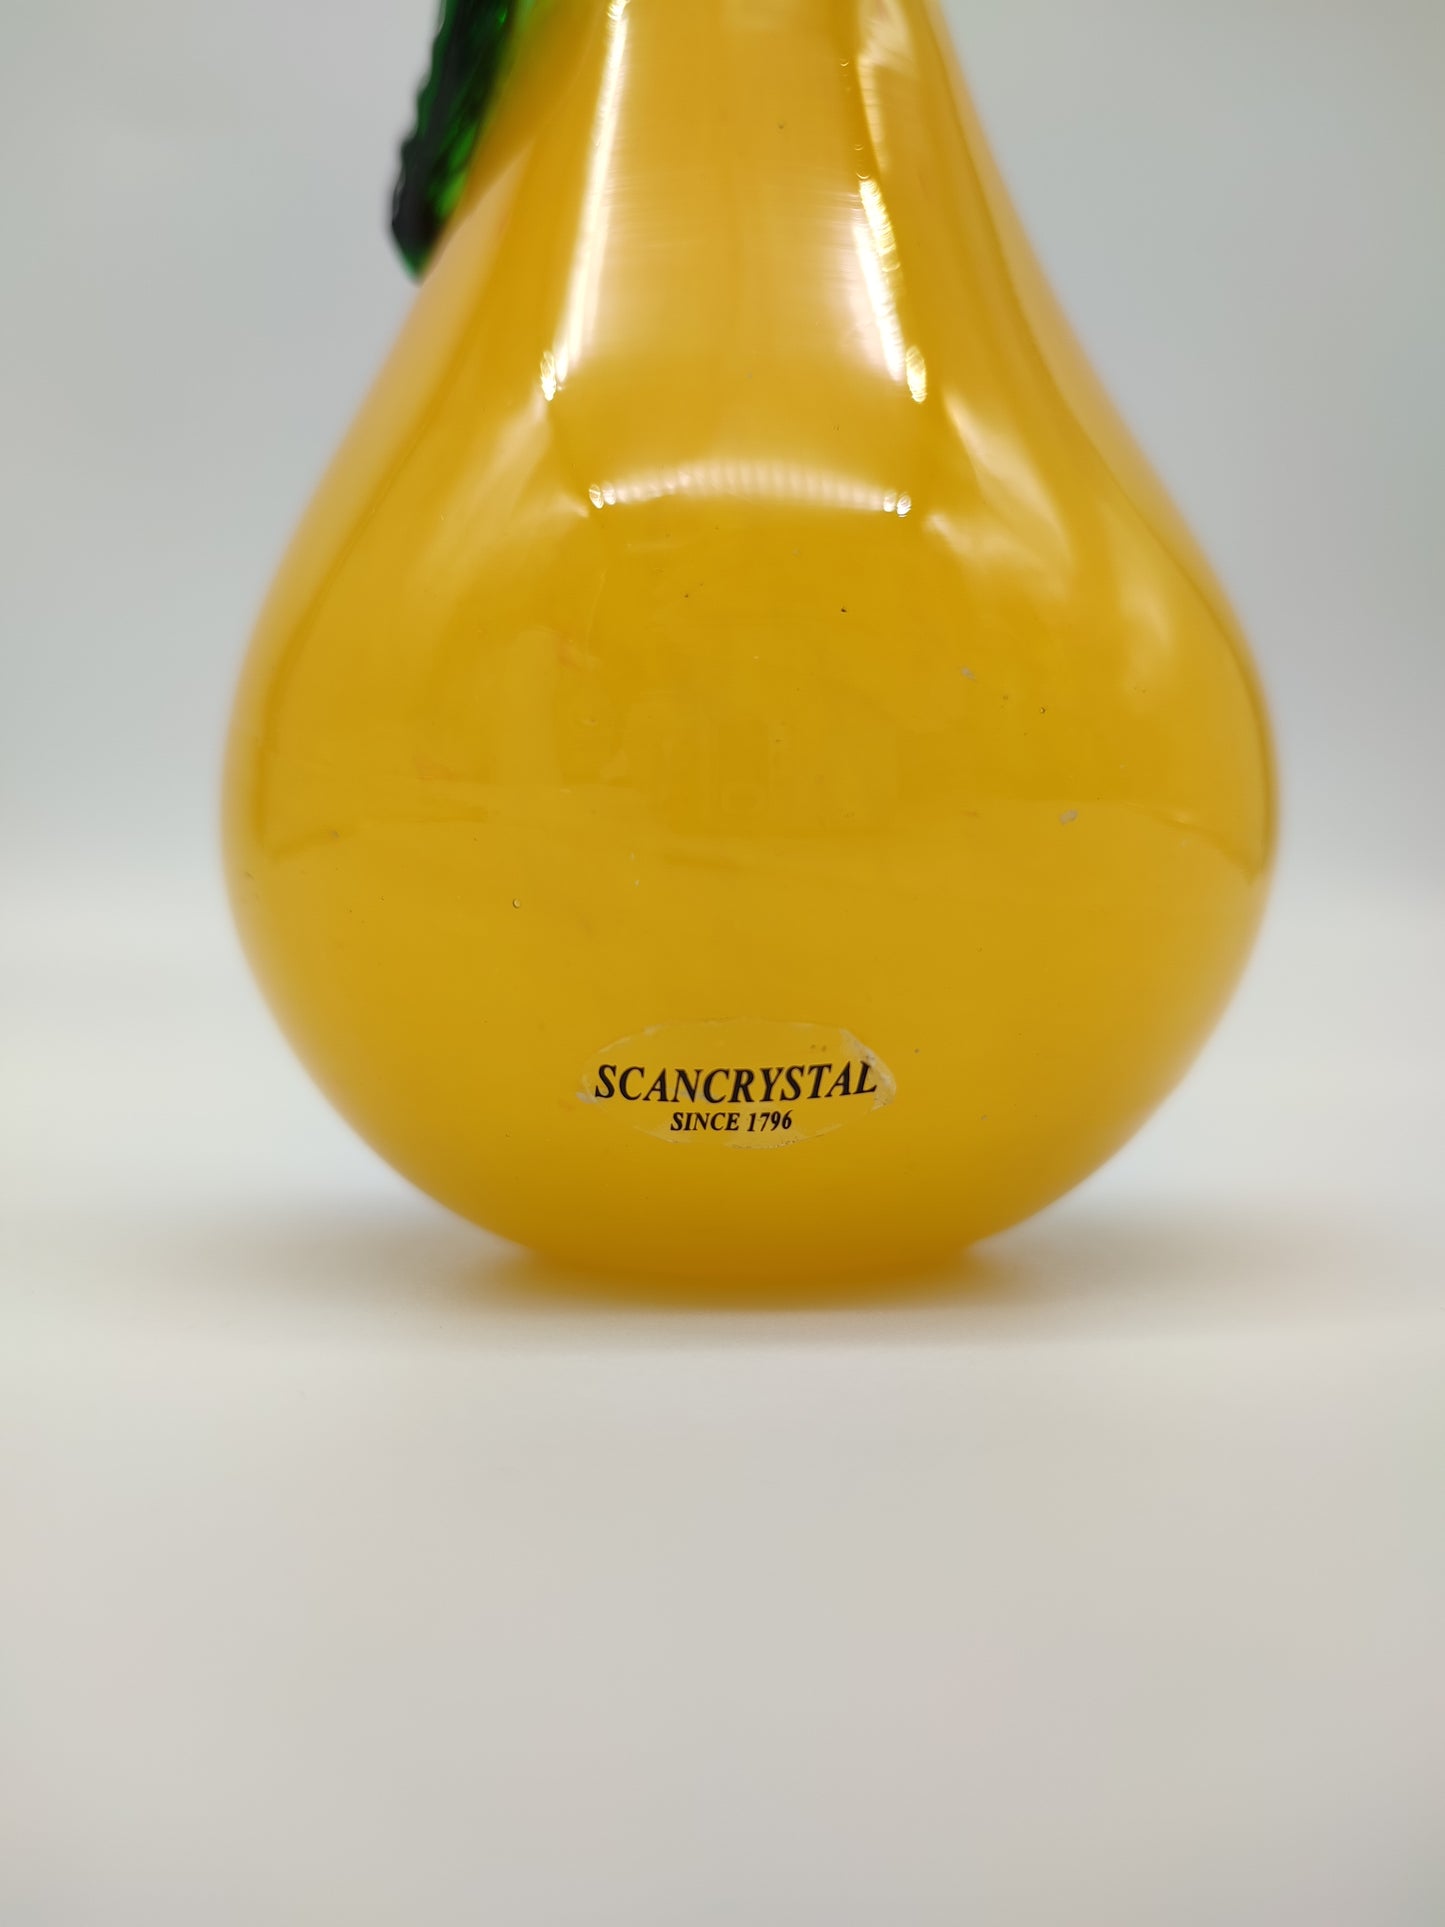 68128-4 Pera in vetro di Murano gialla e rossa